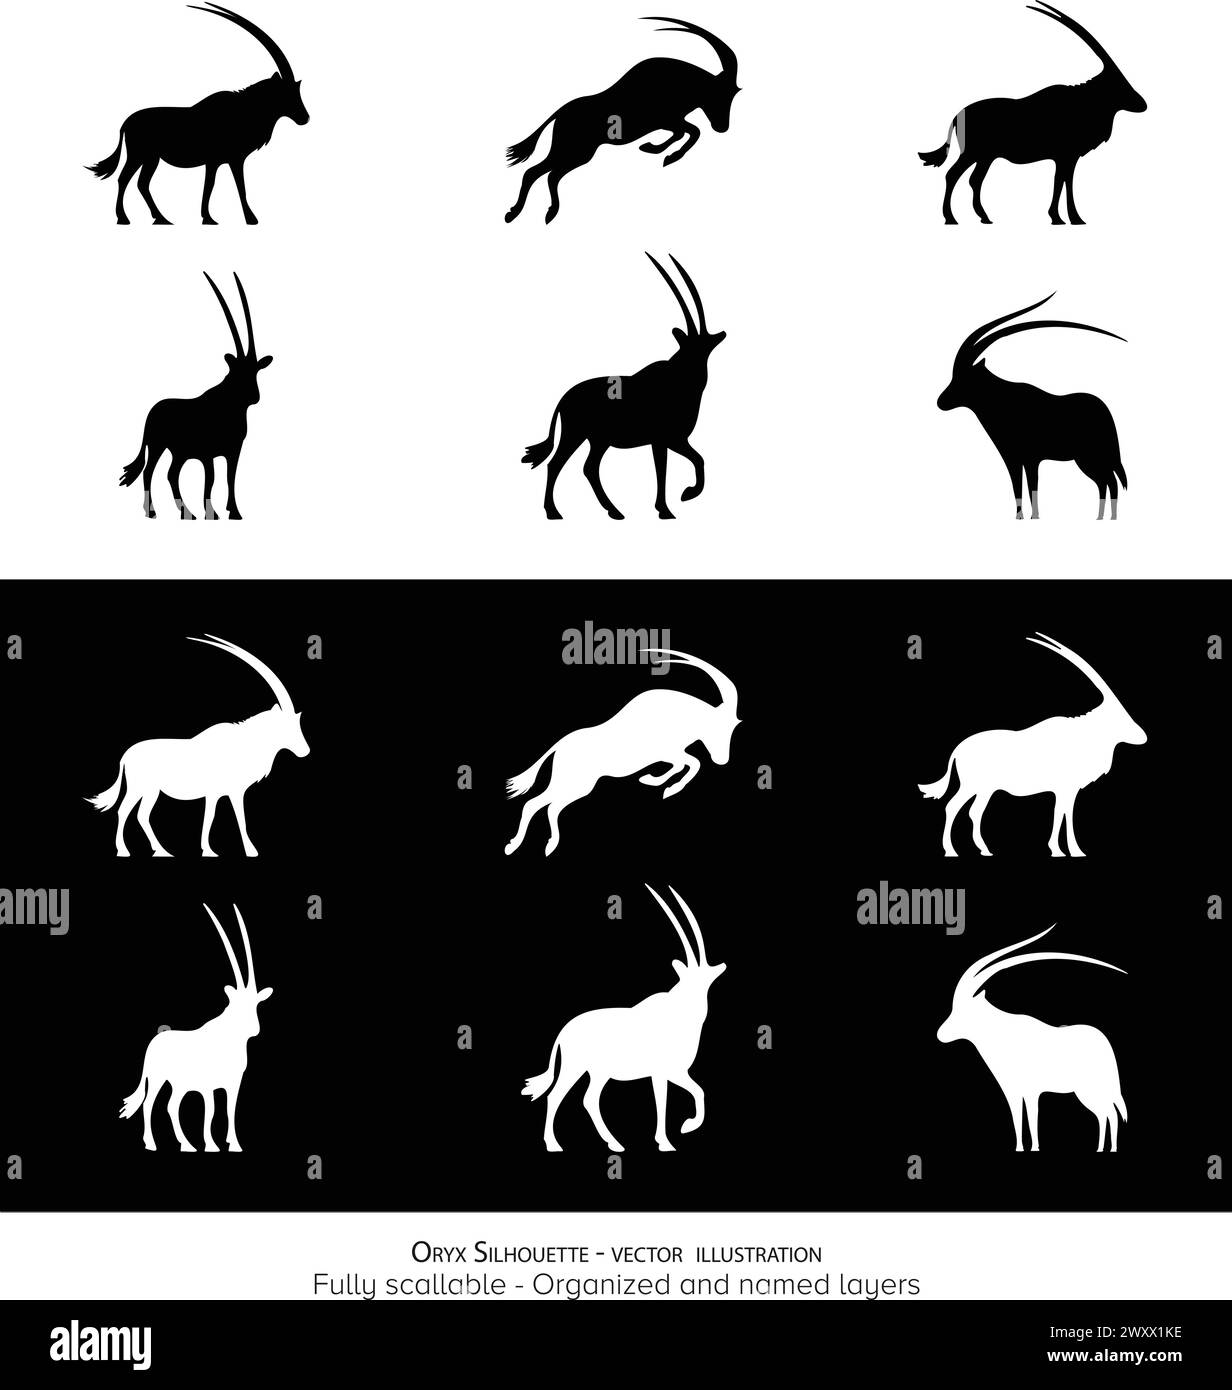 Emblématique minimaliste Oryx Silhouette : animal National pf Qatar, Namibie, Jordanie et Oman. Illustration vectorielle. Illustration de Vecteur